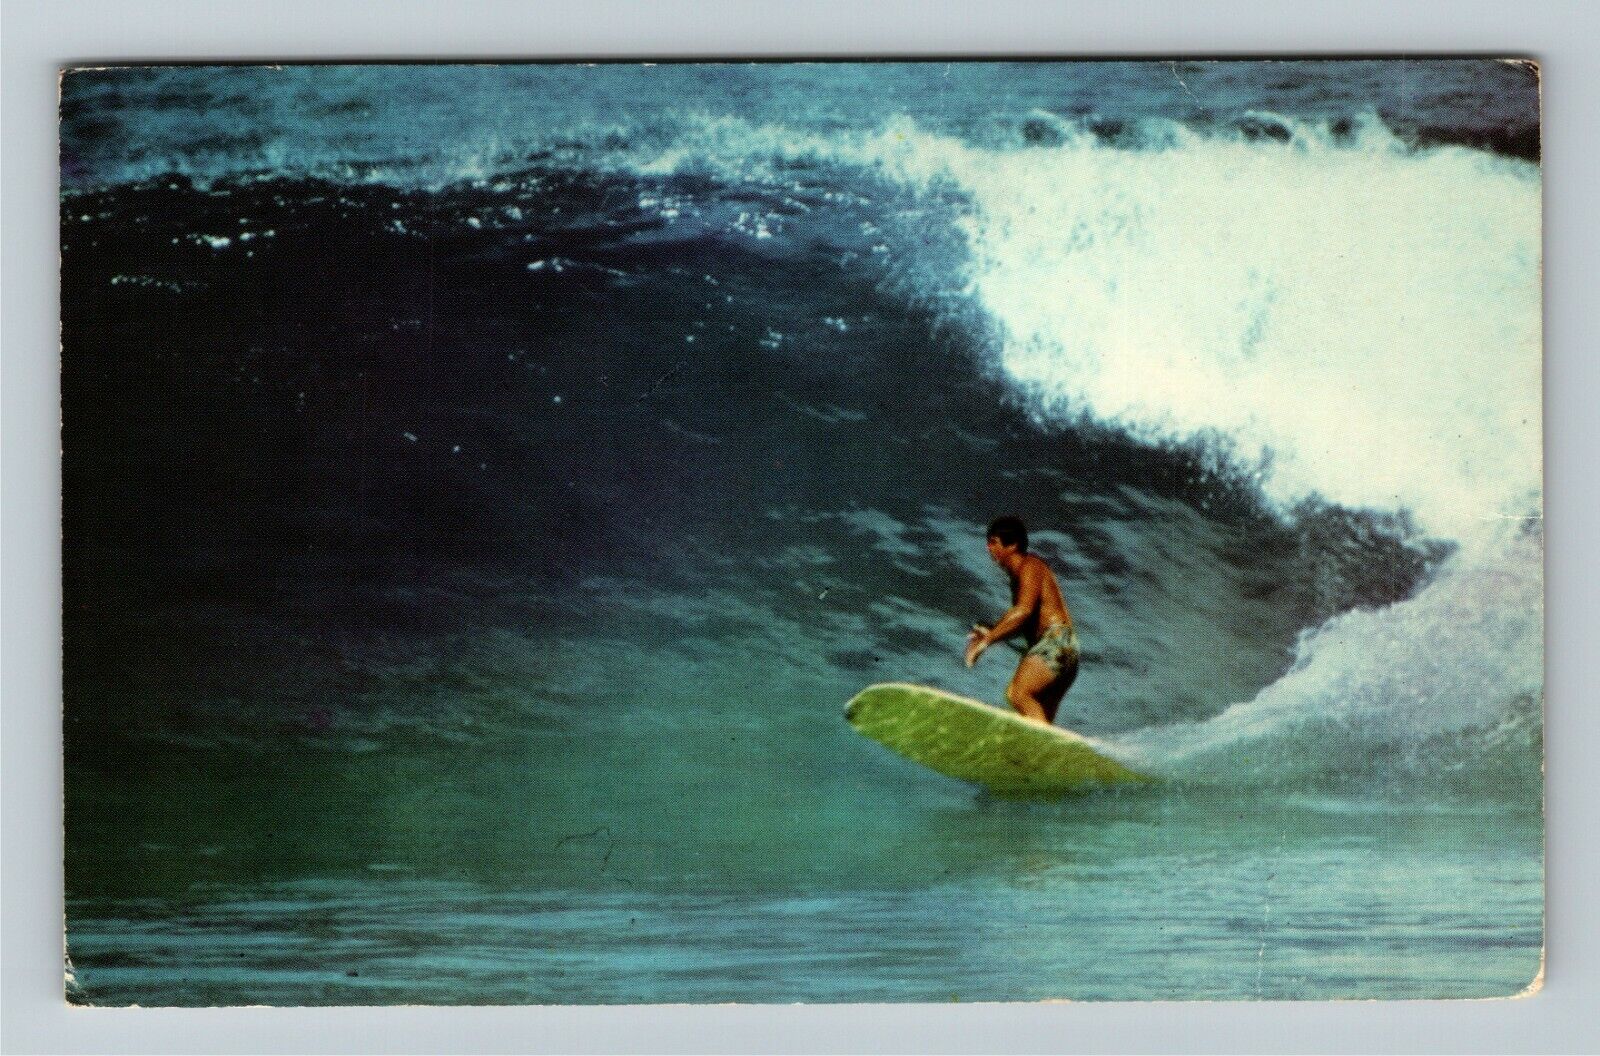 Hawaii HI-Hawaii, Shooting the Curl, Waimea Bay, Vintage Postcard